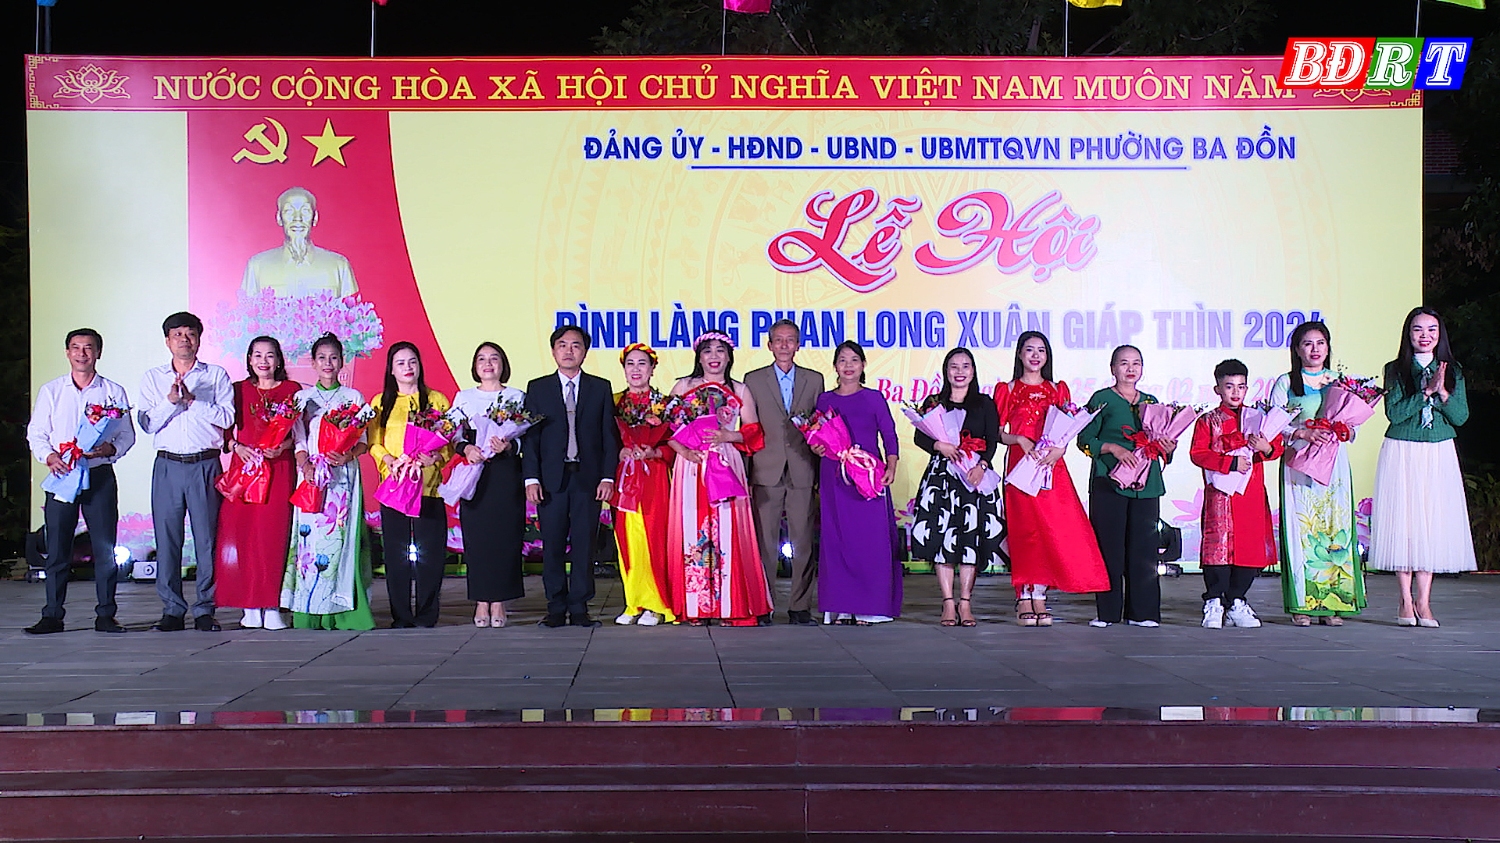 Lãnh đạo UBND phường Ba Đồn tặng hoa cho 13 đội tham gia đêm diễn văn nghệ